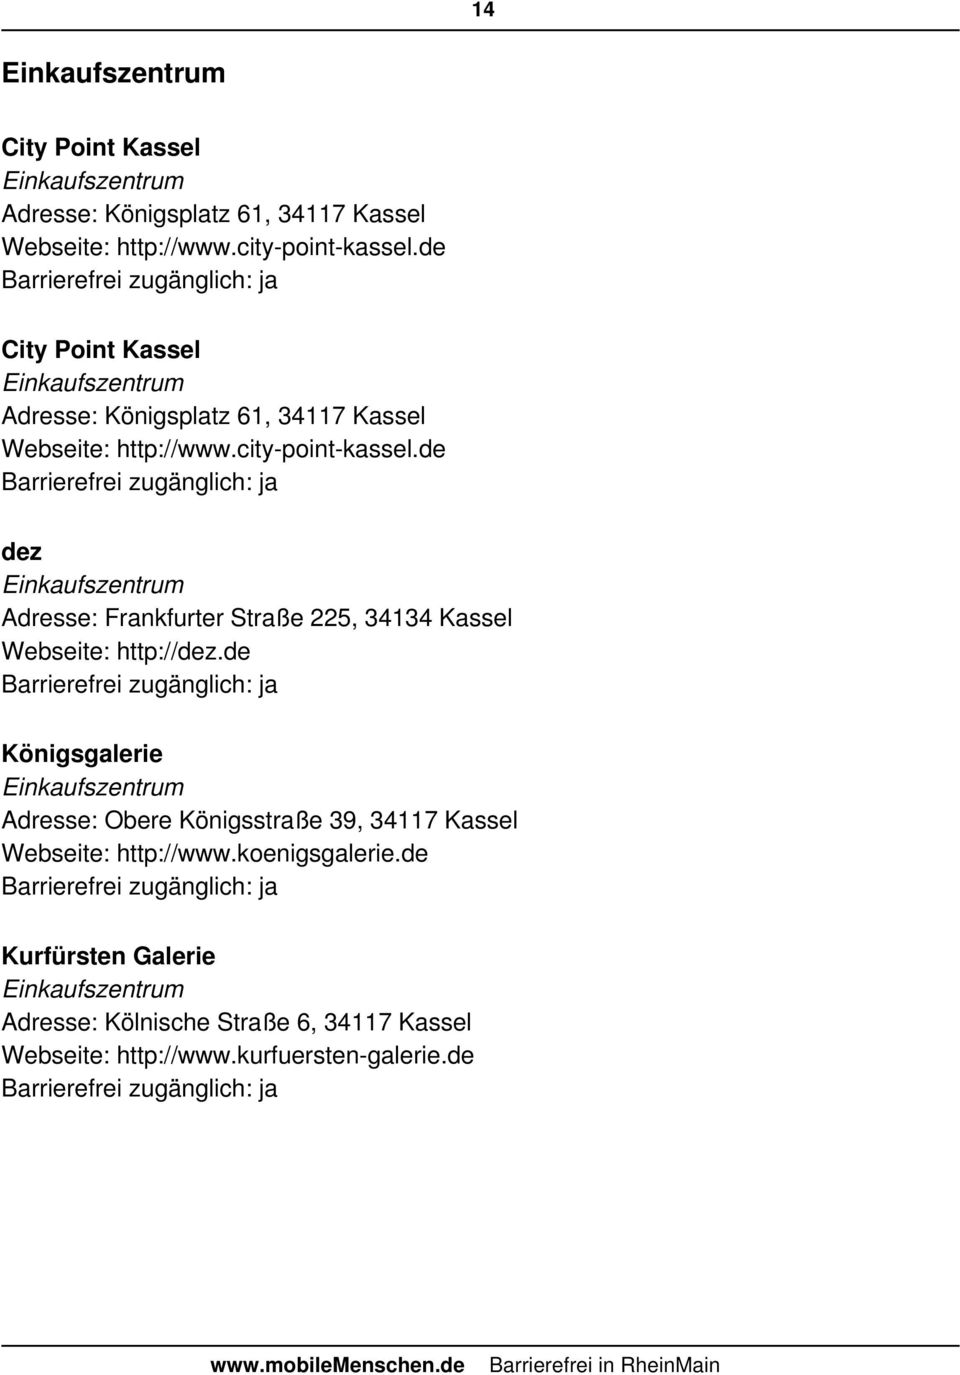 Barrierefreie Ortspunkte In Kassel Pdf Kostenfreier Download